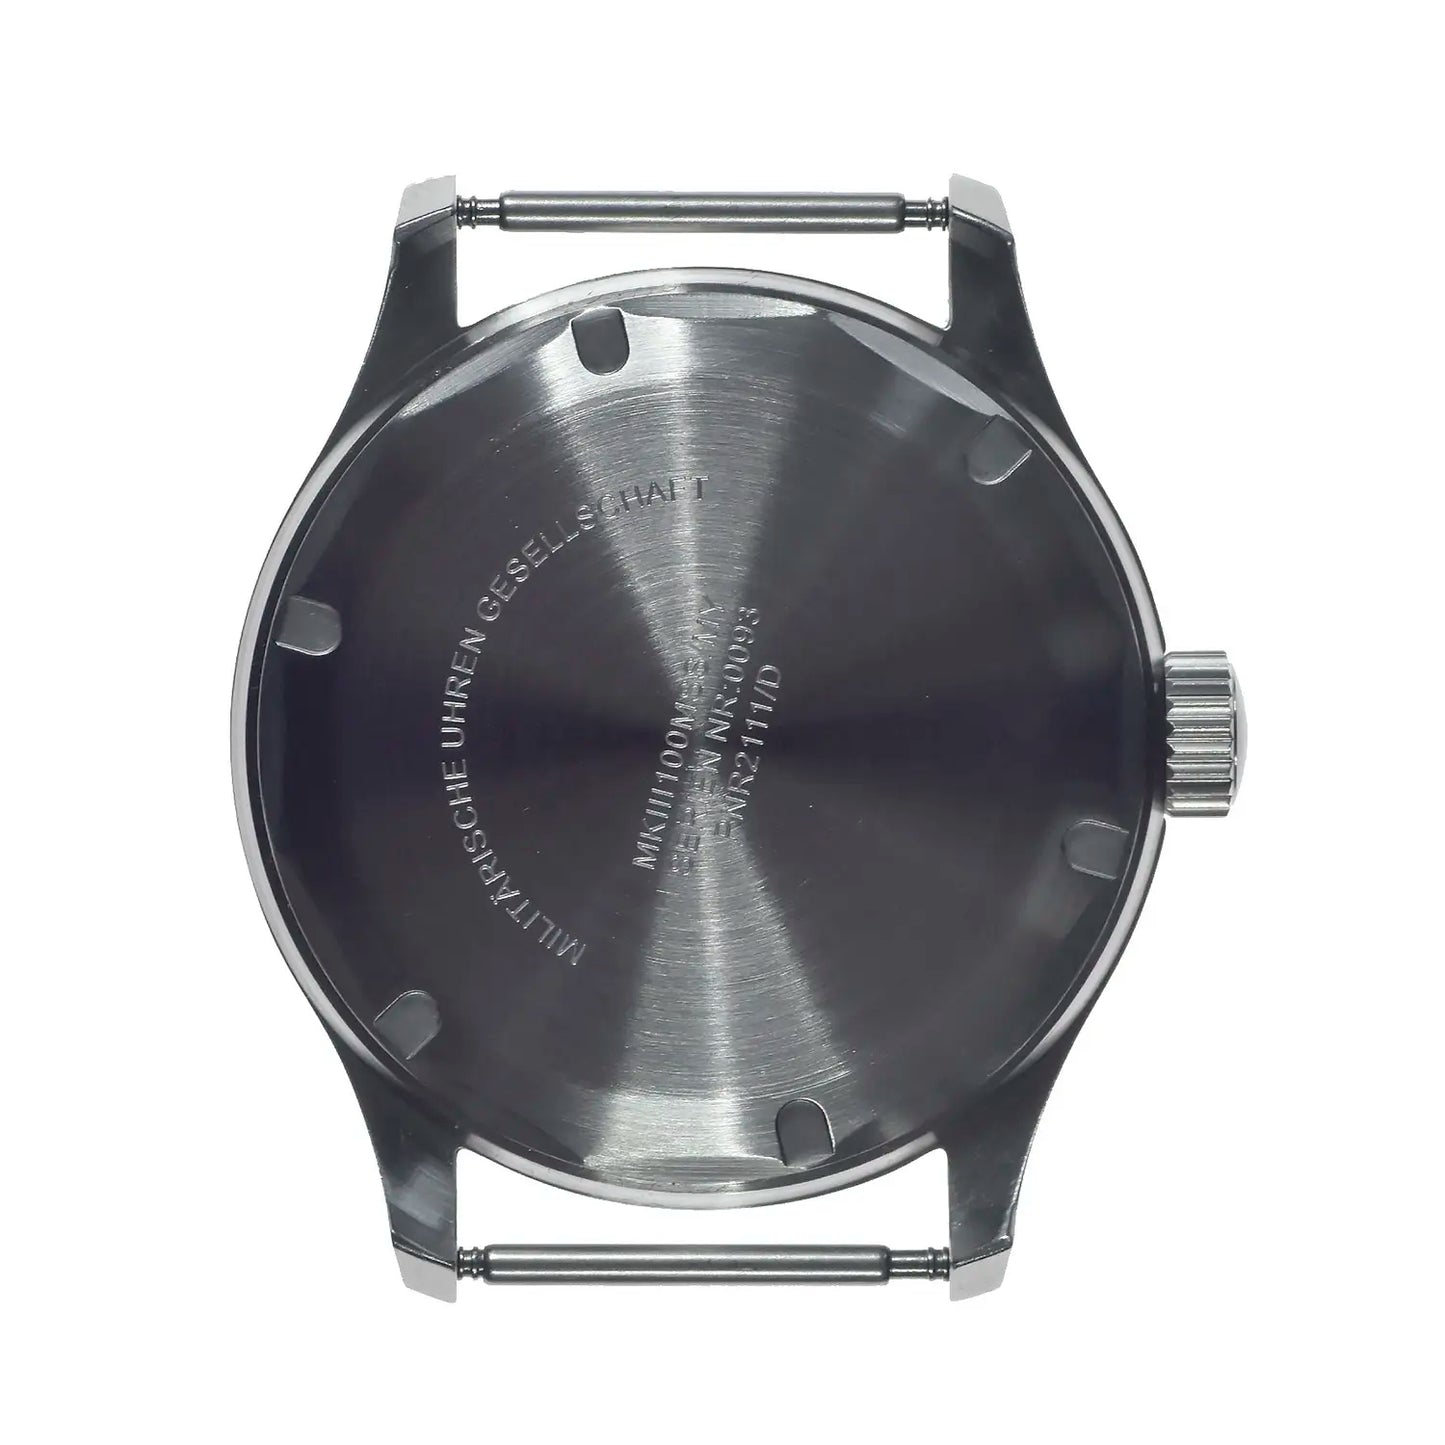 MKIII 1950s/60s Pattern Automatic Field Watch